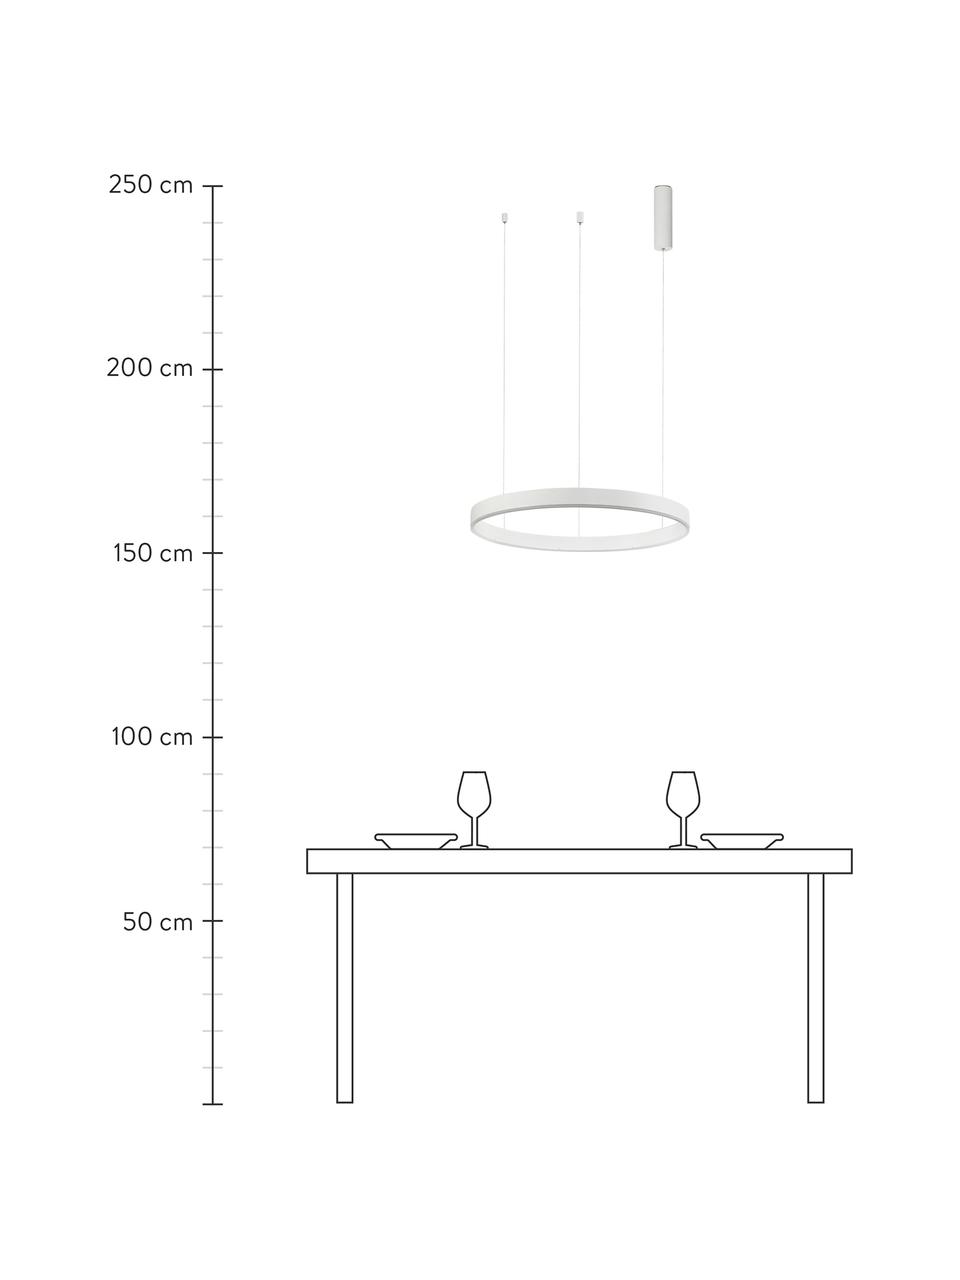 Lampa wisząca LED Motif, Biały, Ø 60 x W 190 cm